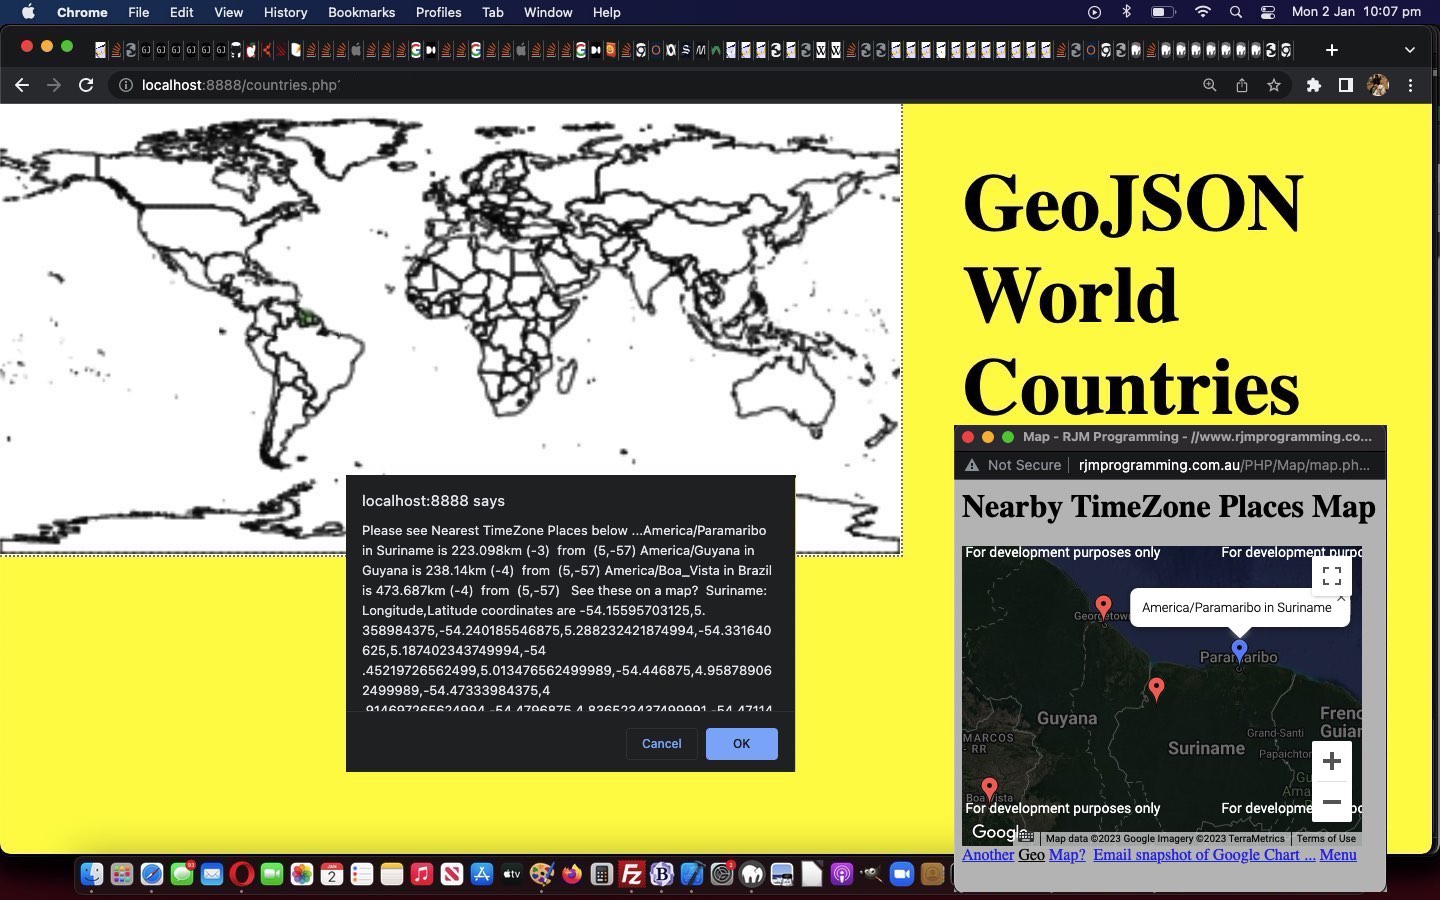 GeoJson World Countries Tutorial